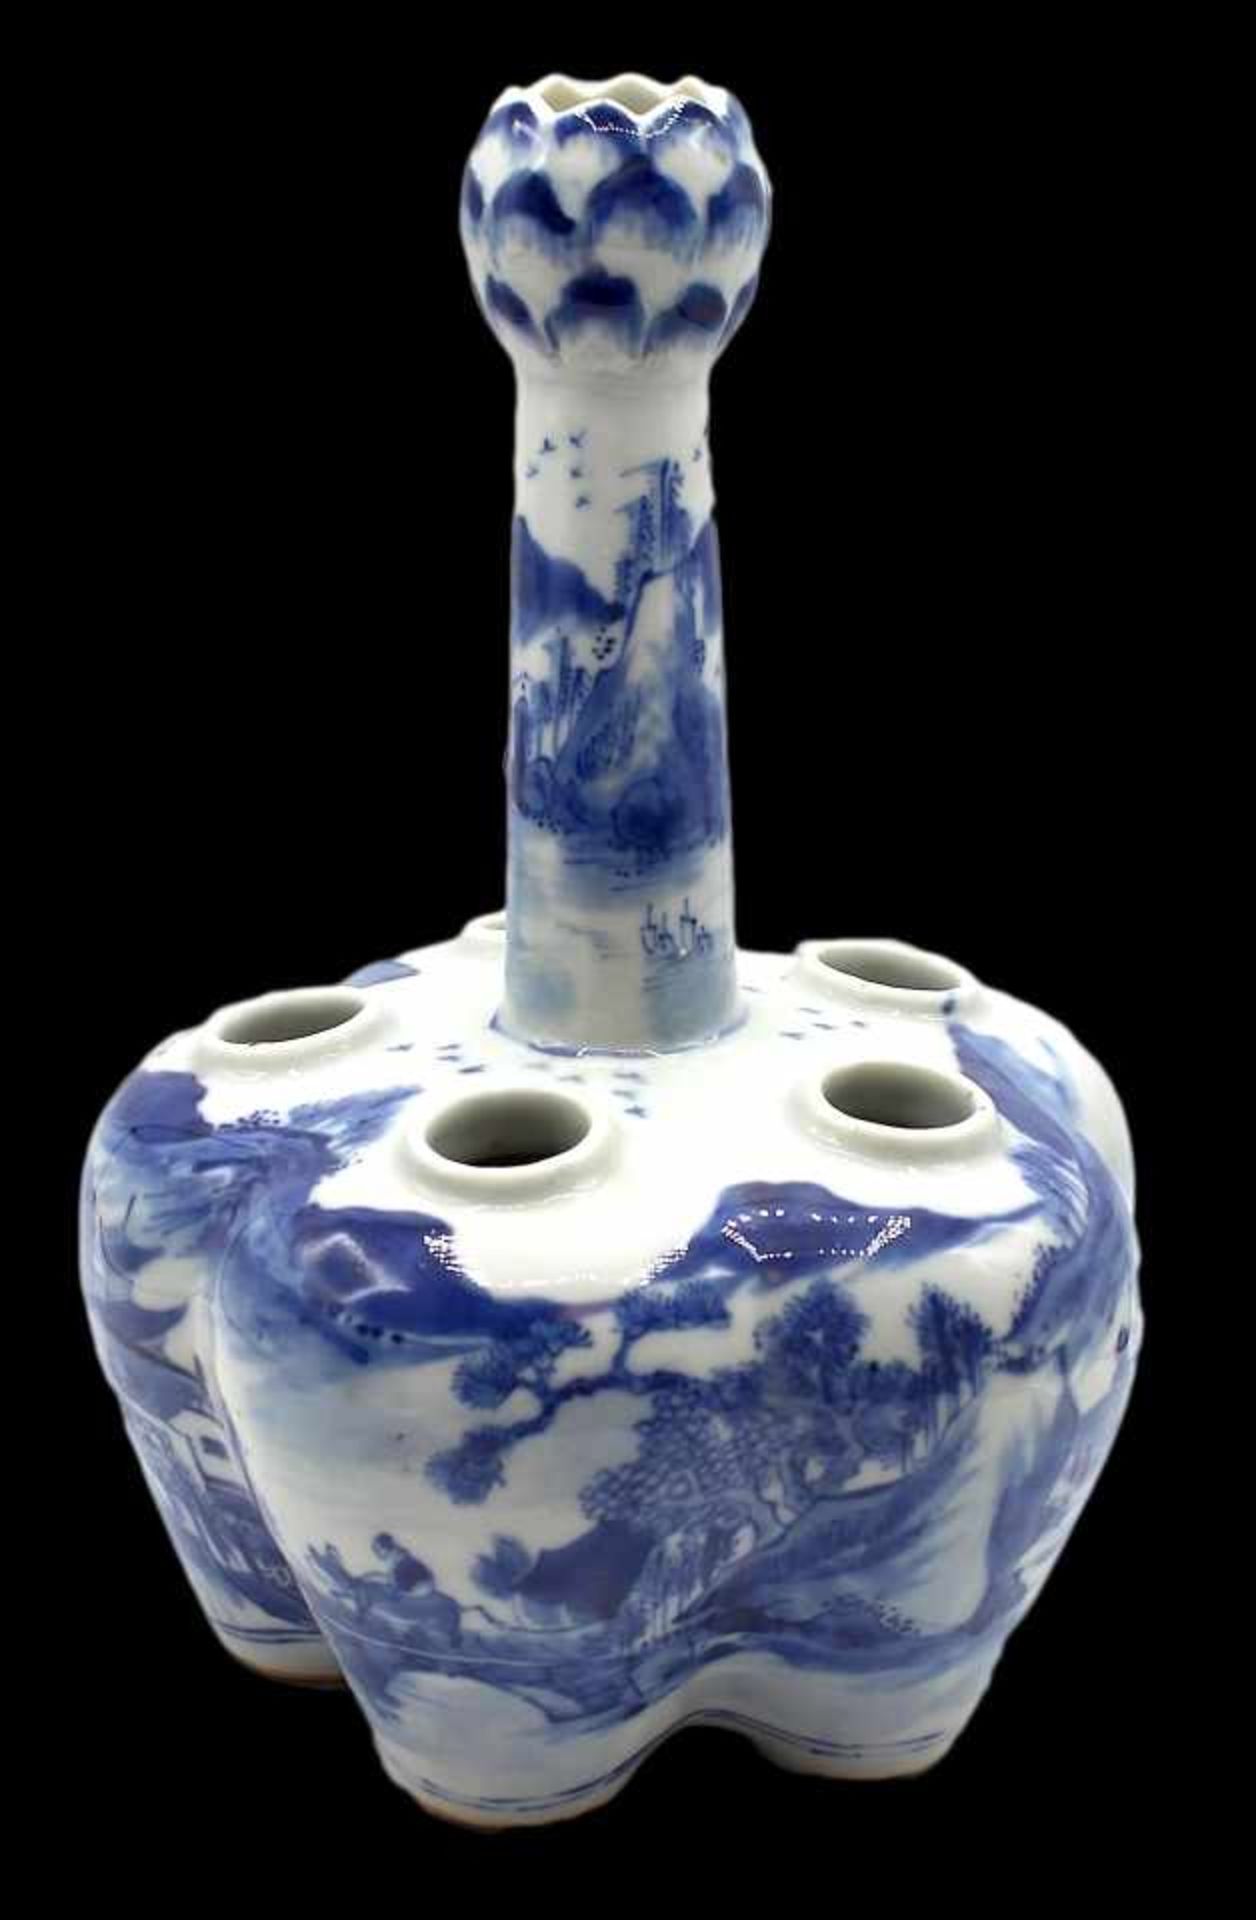 Chinesische Steckvase - wohl Qing Dynastie (1636-1911) blaue Bodenmarke, Porzellan weiß / blau,